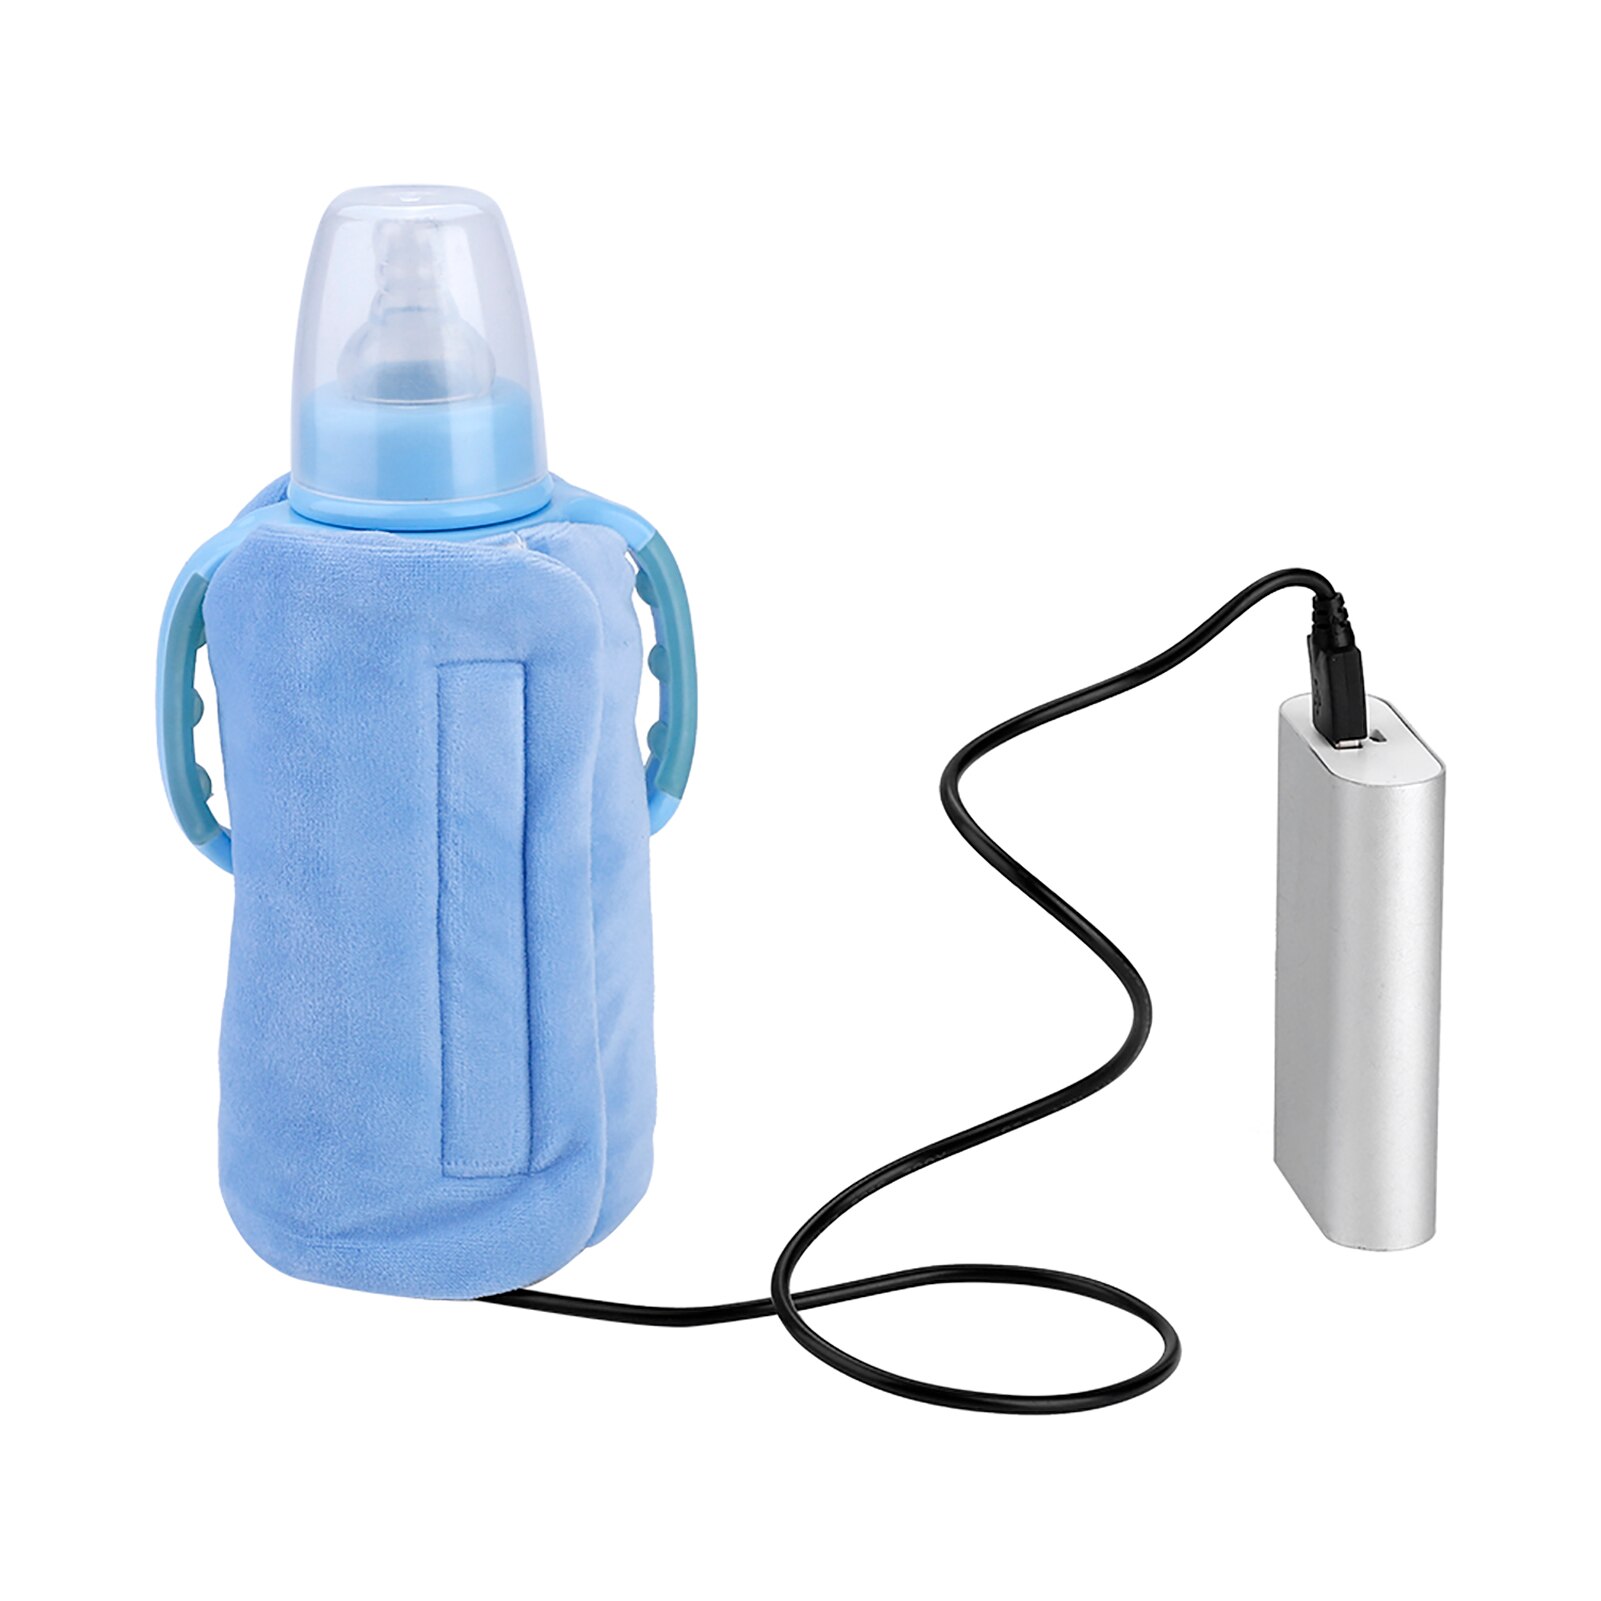 Usb baby mælk varmere bærbar rejse flaske varmere spædbarn fodring flaske taske isolering dække baby pleje flaske varmelegeme: Blå